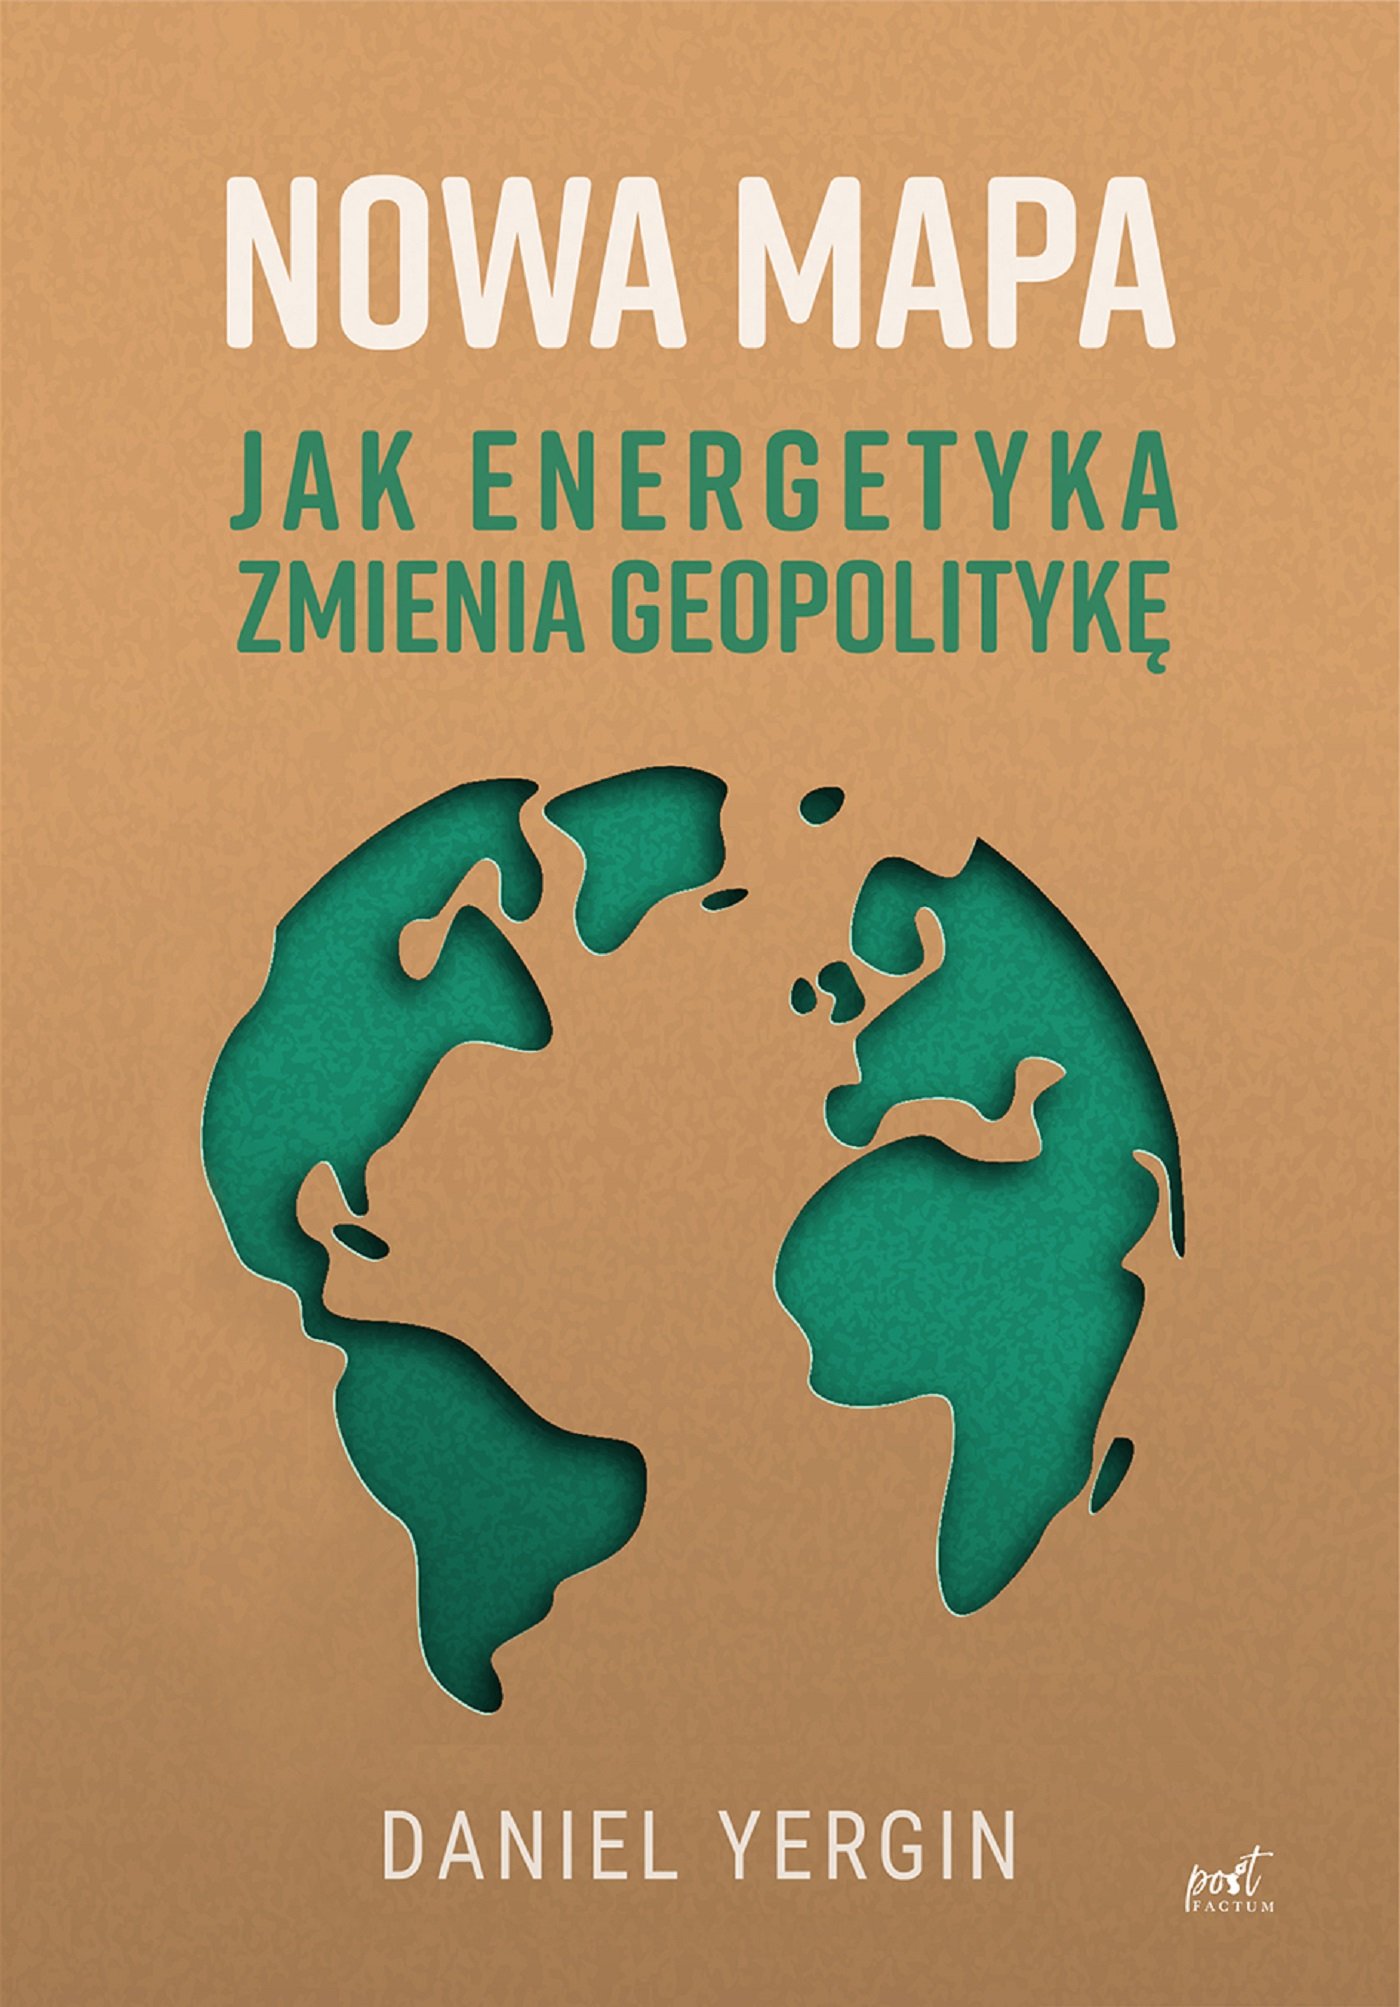 Nowa mapa. Jak energetyka zmienia geopolitykę - Ebook (Książka EPUB) do pobrania w formacie EPUB